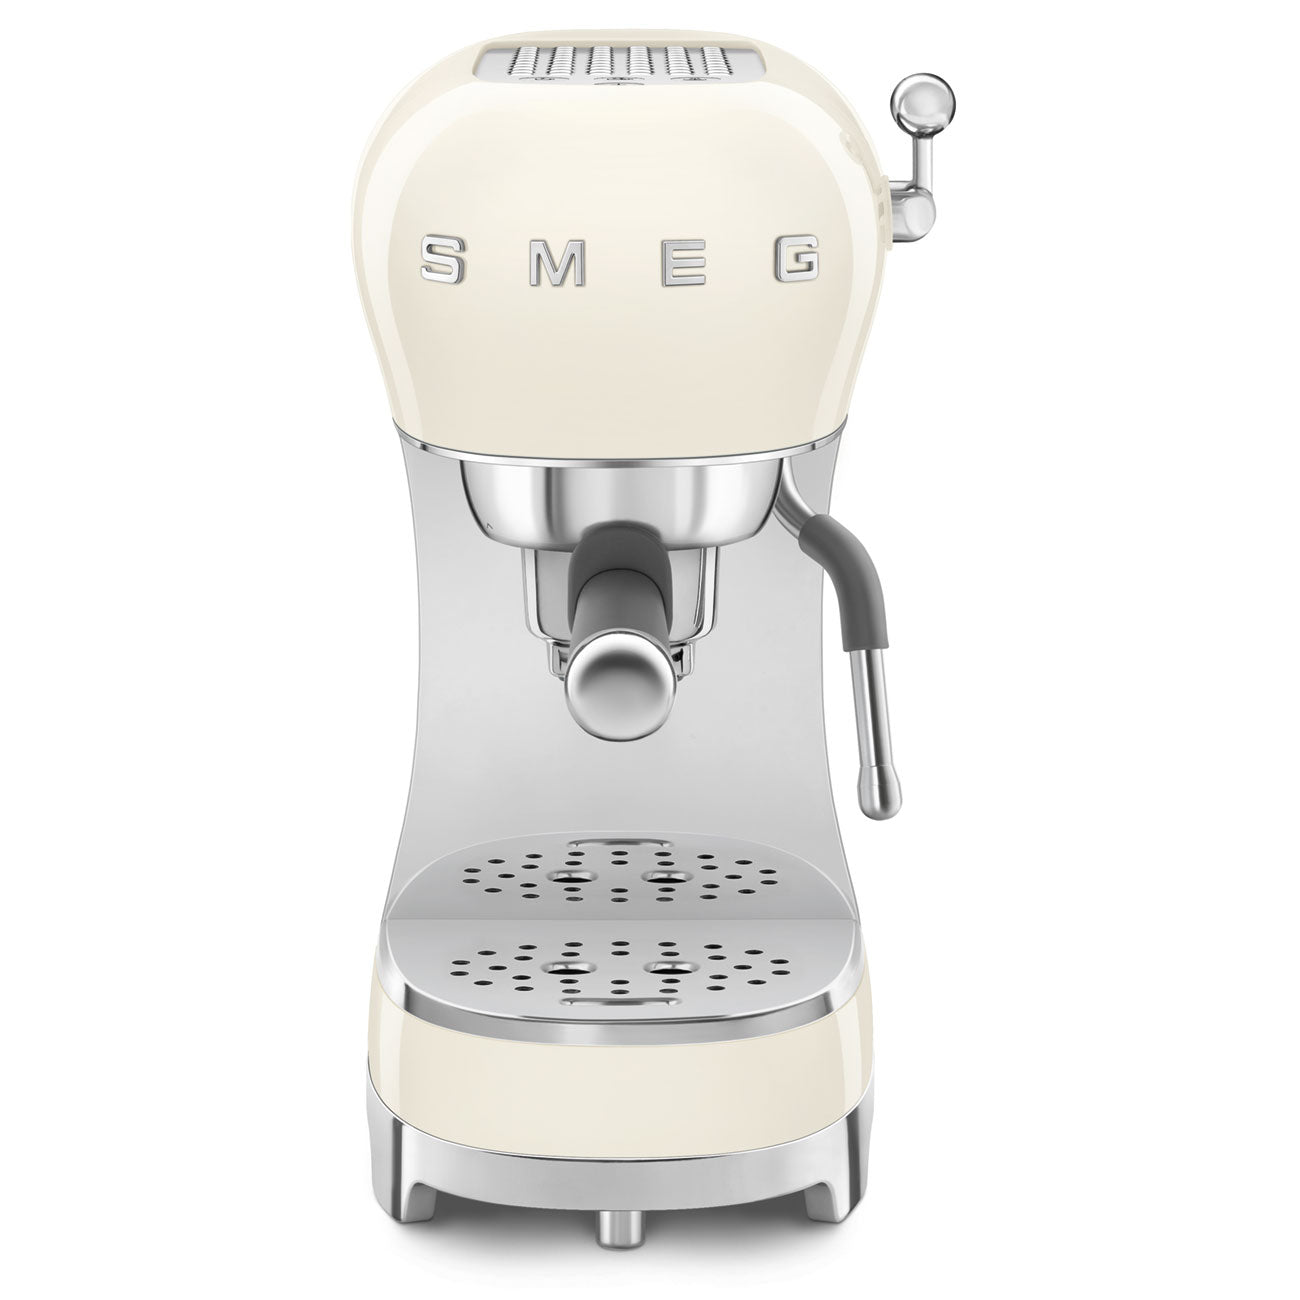 SMEG Espressomaschine mit Siebträger50's Style Version 2 Espressomaschinen SMEG    - Rheinland.Coffee